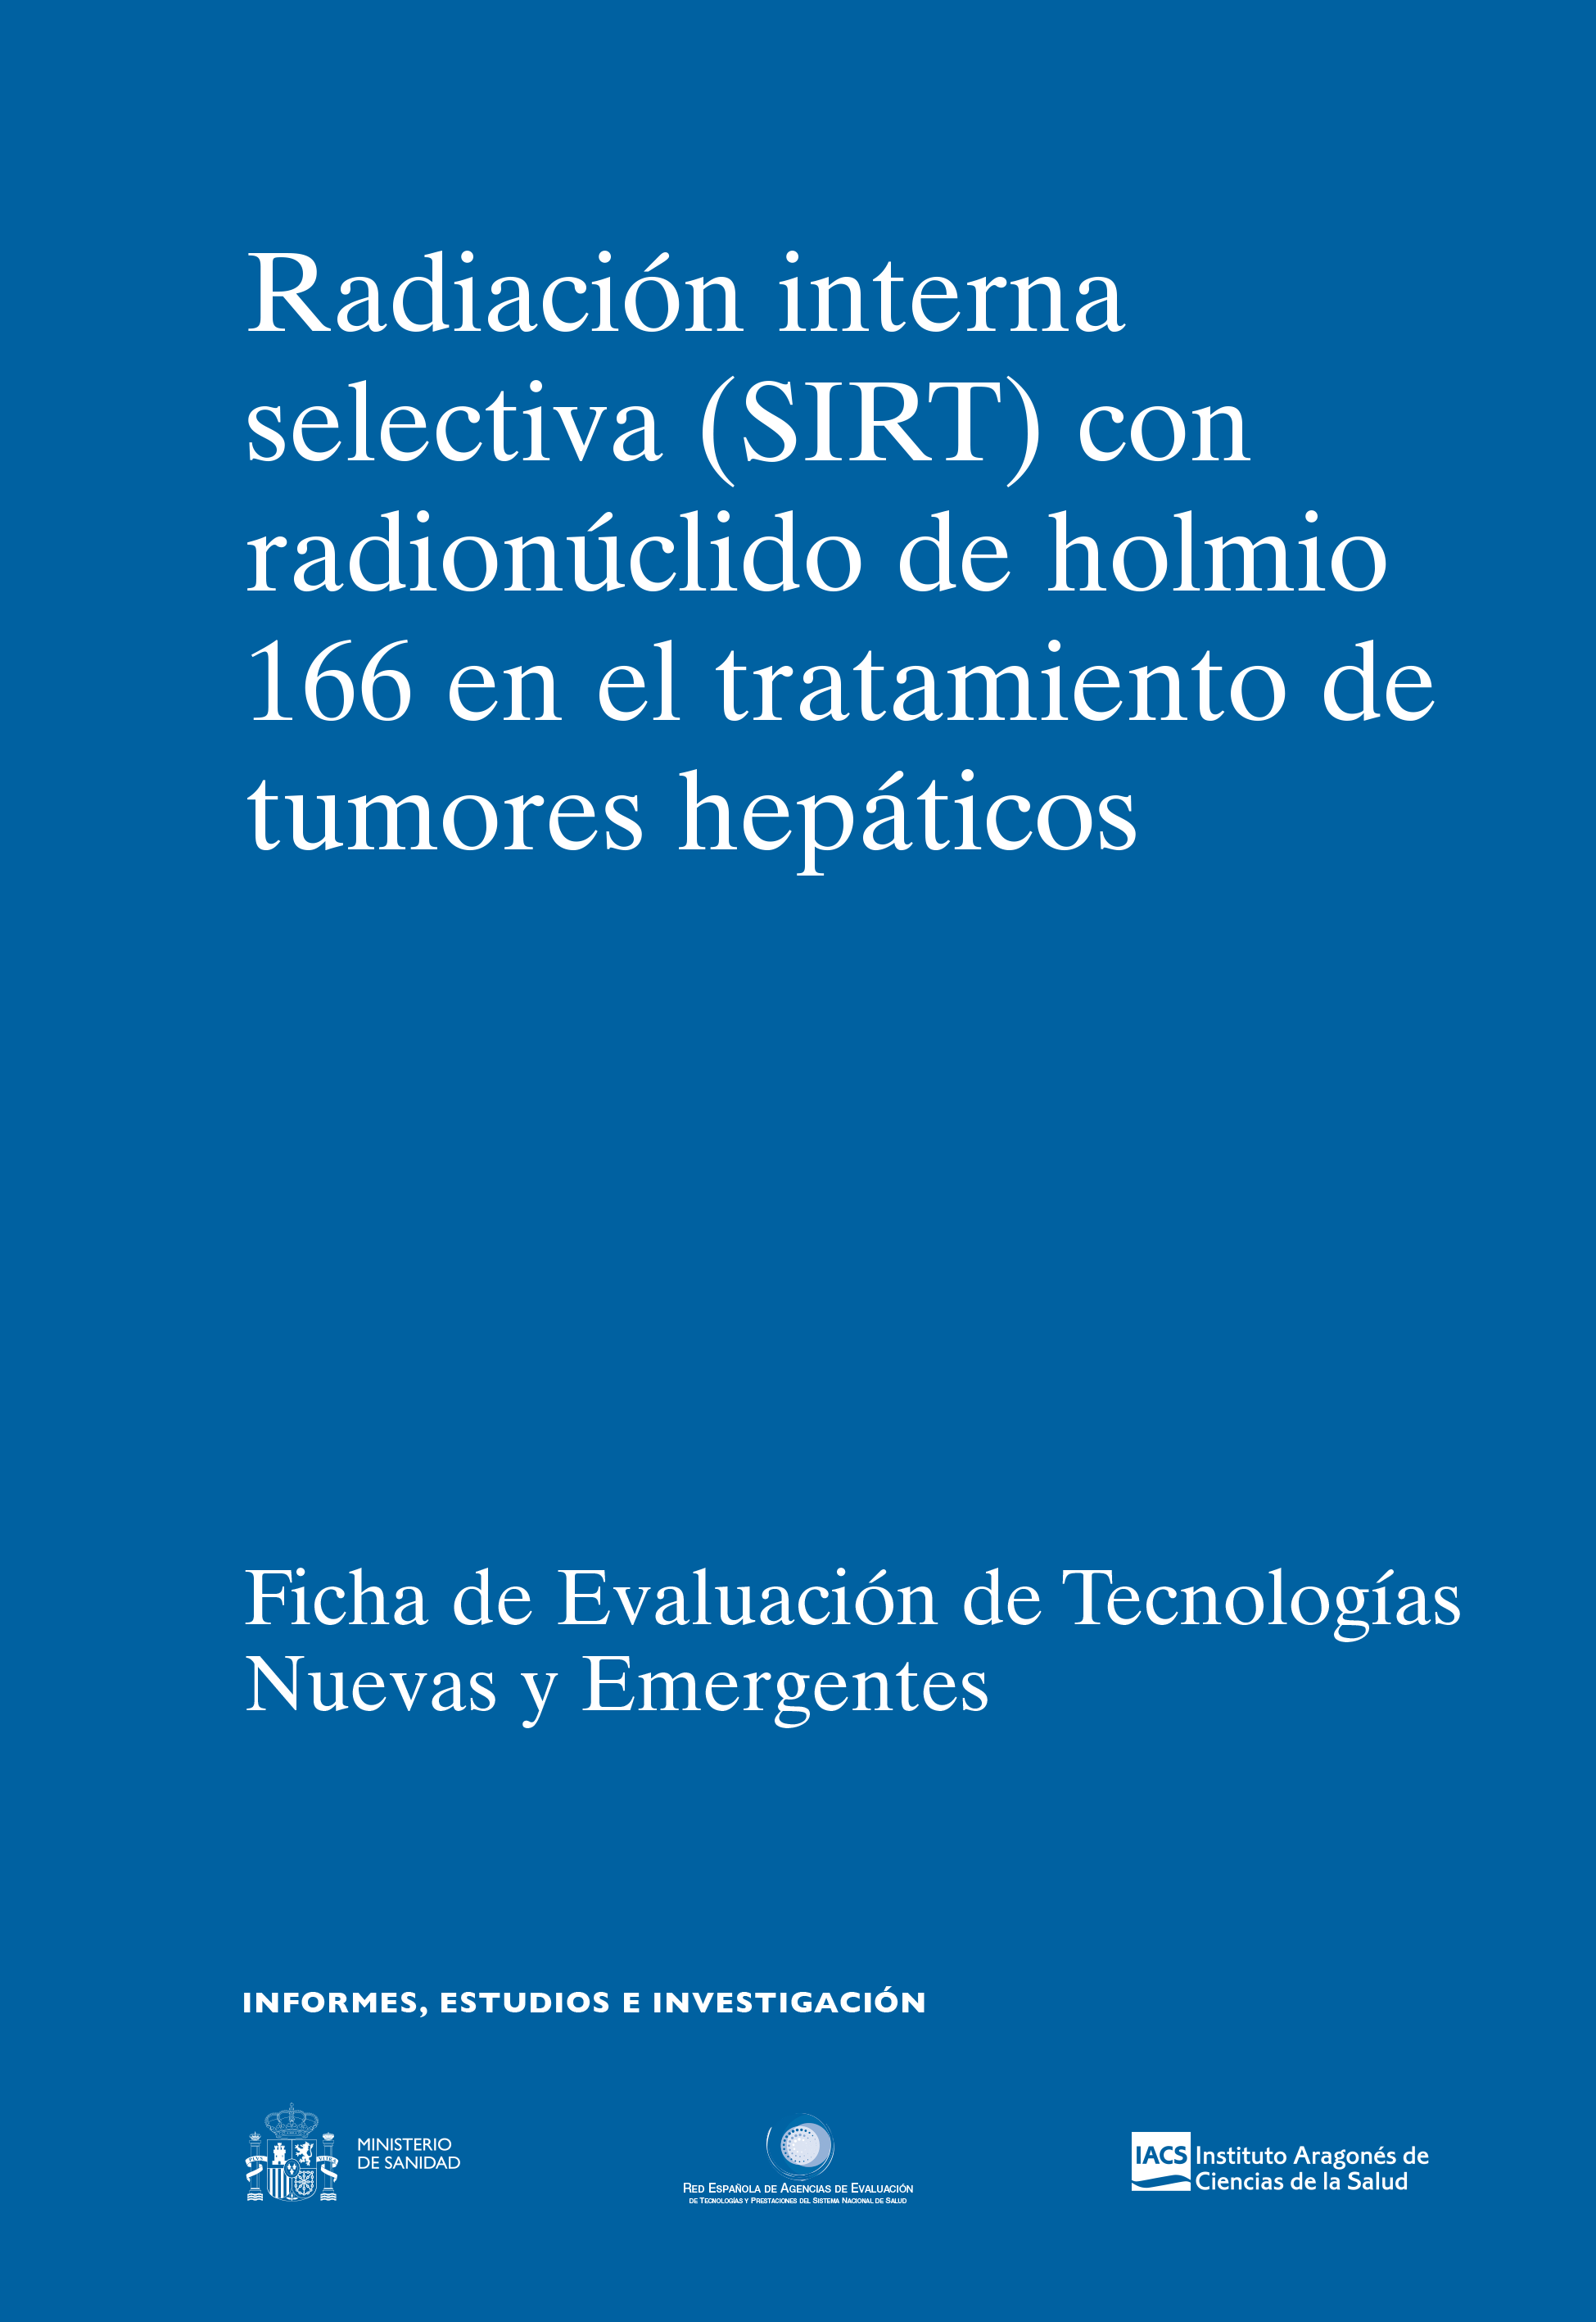 Radiación interna selectiva (SIRT) con radionúclido de holmio 166 en el tratamiento de tumores hepático